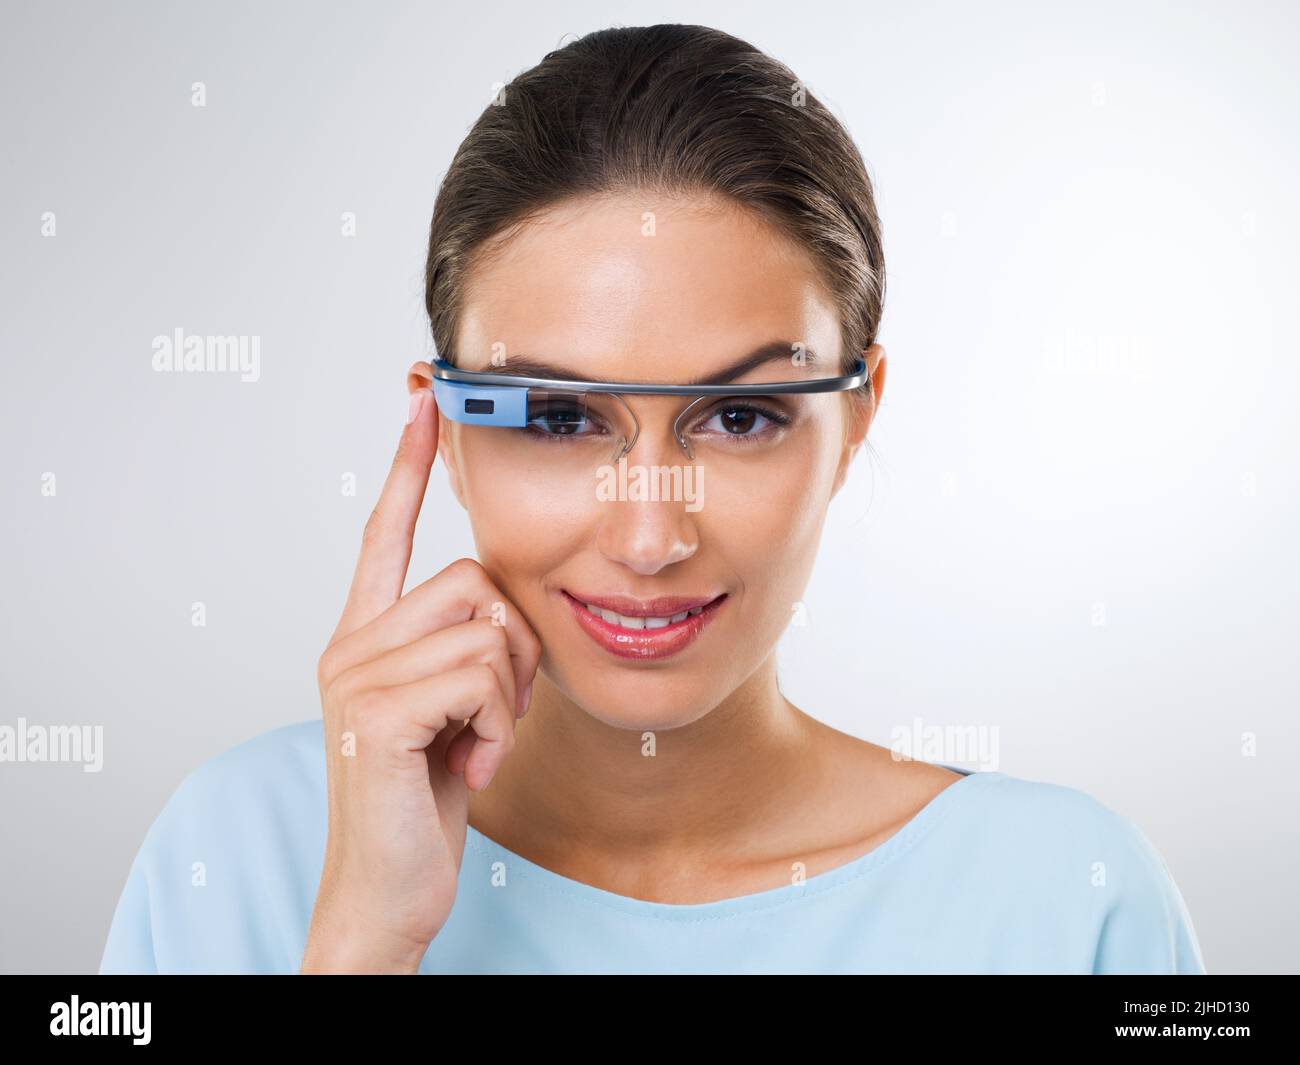 Eine attraktive junge Frau, die eine Brille mit Internetzugang trägt.die in diesem Bild gezeigten kommerziellen Produkte oder Designs stellen Simulationen eines dar Stockfoto